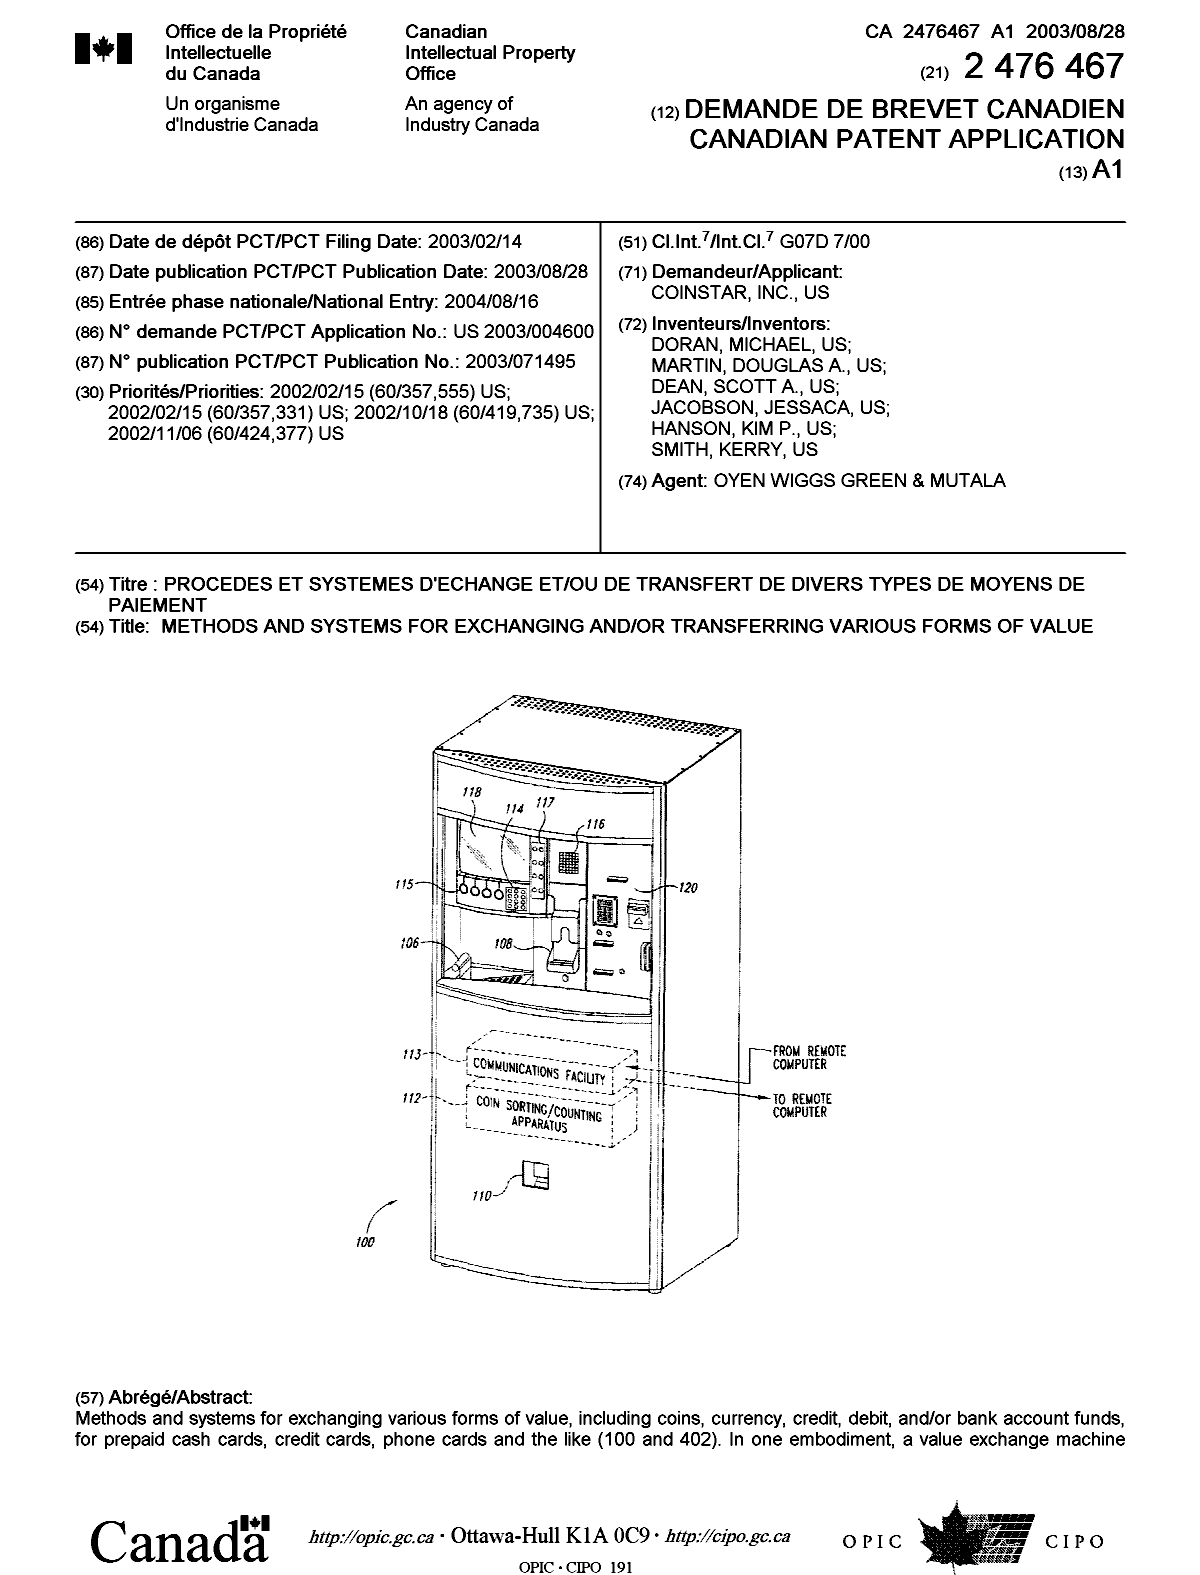 Document de brevet canadien 2476467. Page couverture 20041112. Image 1 de 2